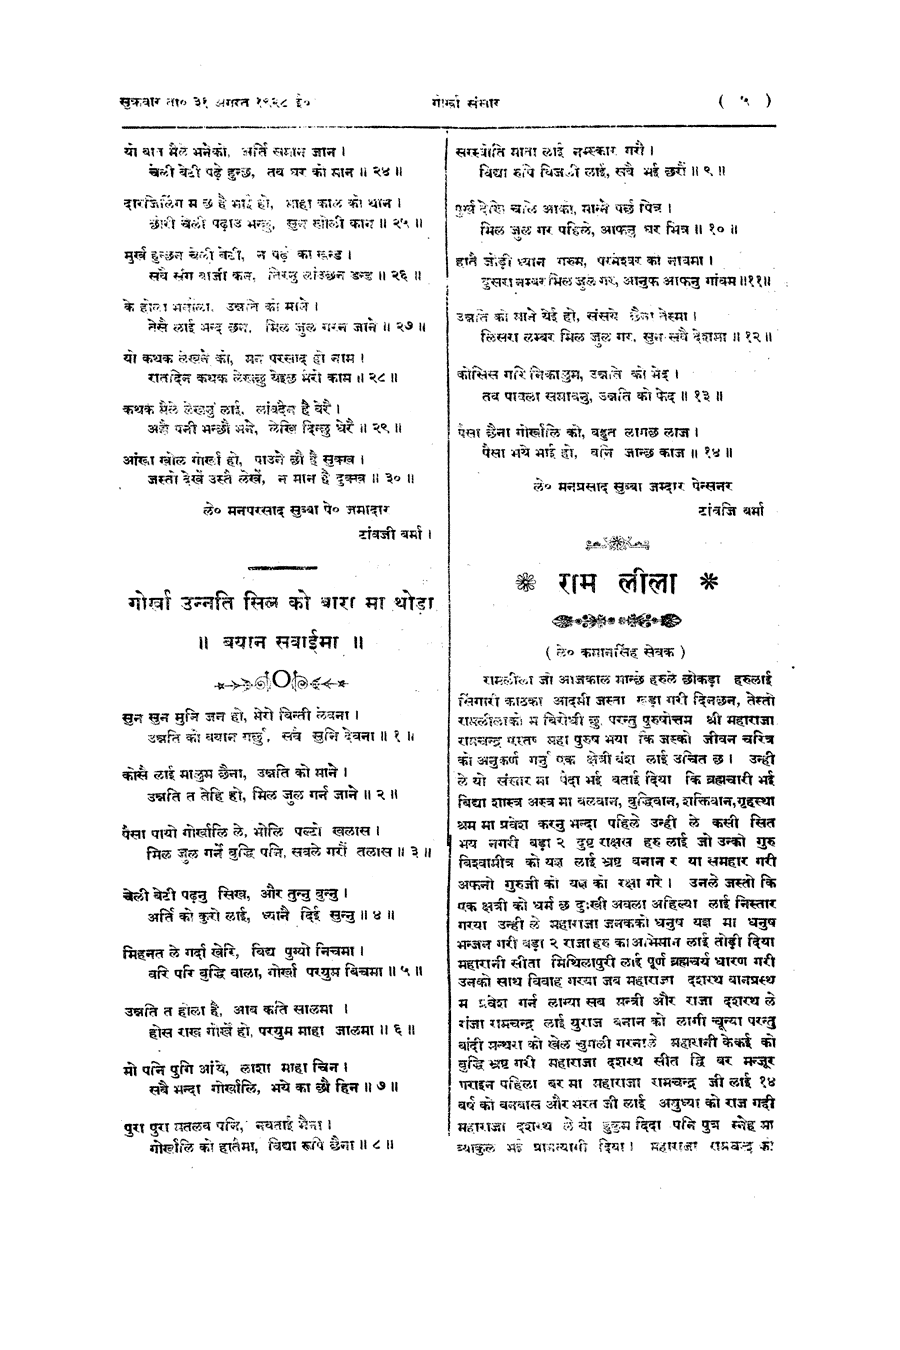 Gorkha Sansar, 31 Aug 1928, page 5